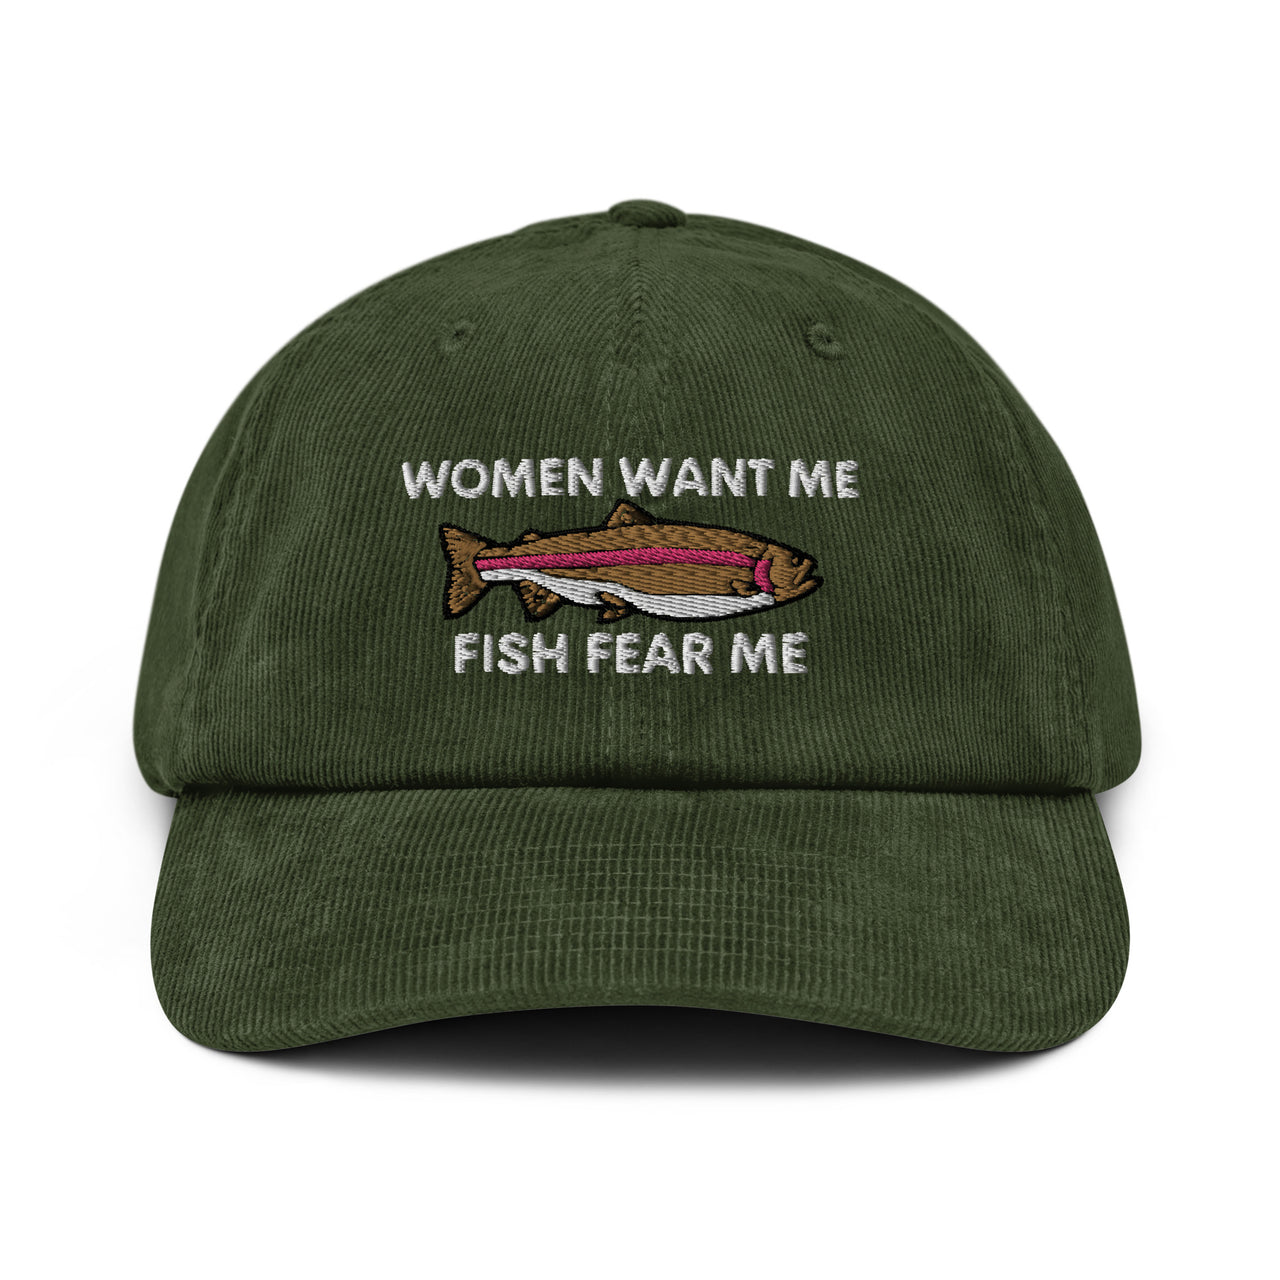 Woman Want Me Fish Fear Me Corduroy hat, Fishing Gift, Fisherman Gift, Fishing Dad Cap, Baseball Cap